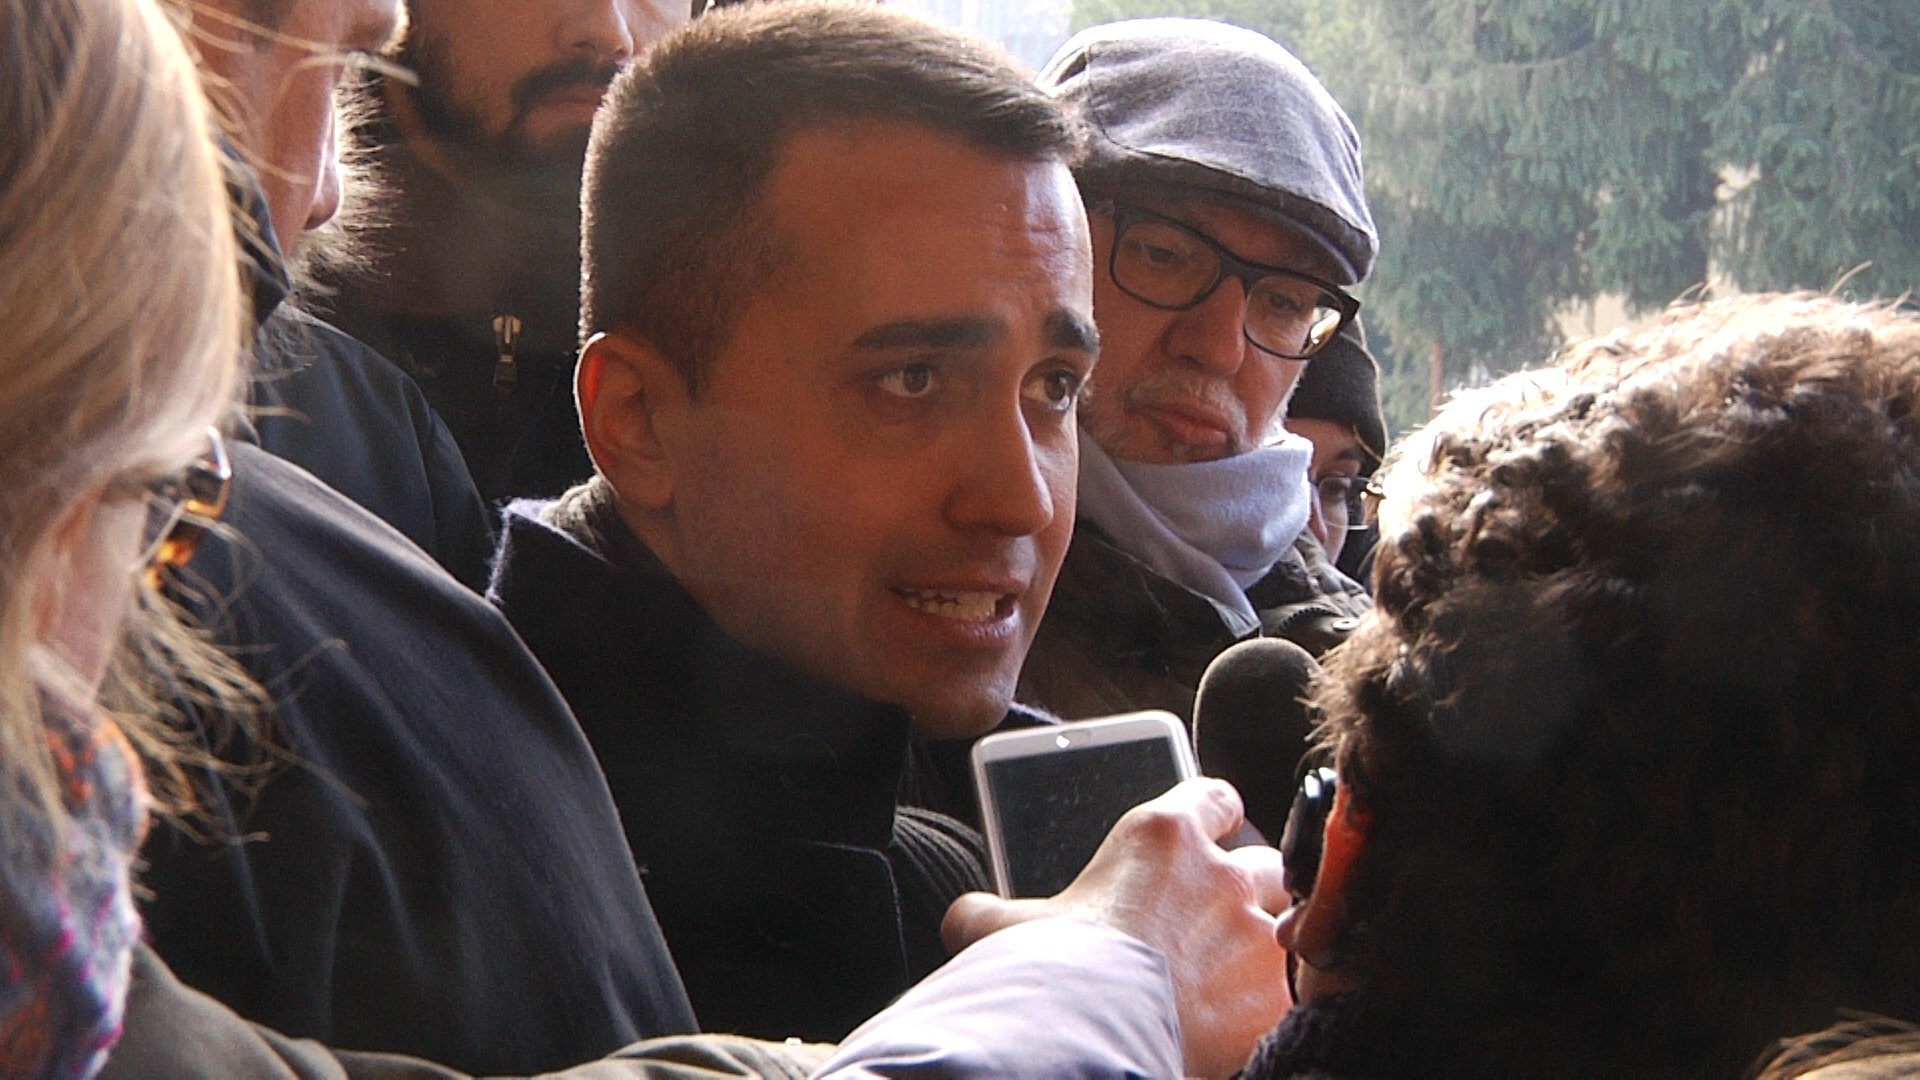 Di Maio sulla Pernigotti: “Più tardi buone notizie per i lavoratori e l’Italia”